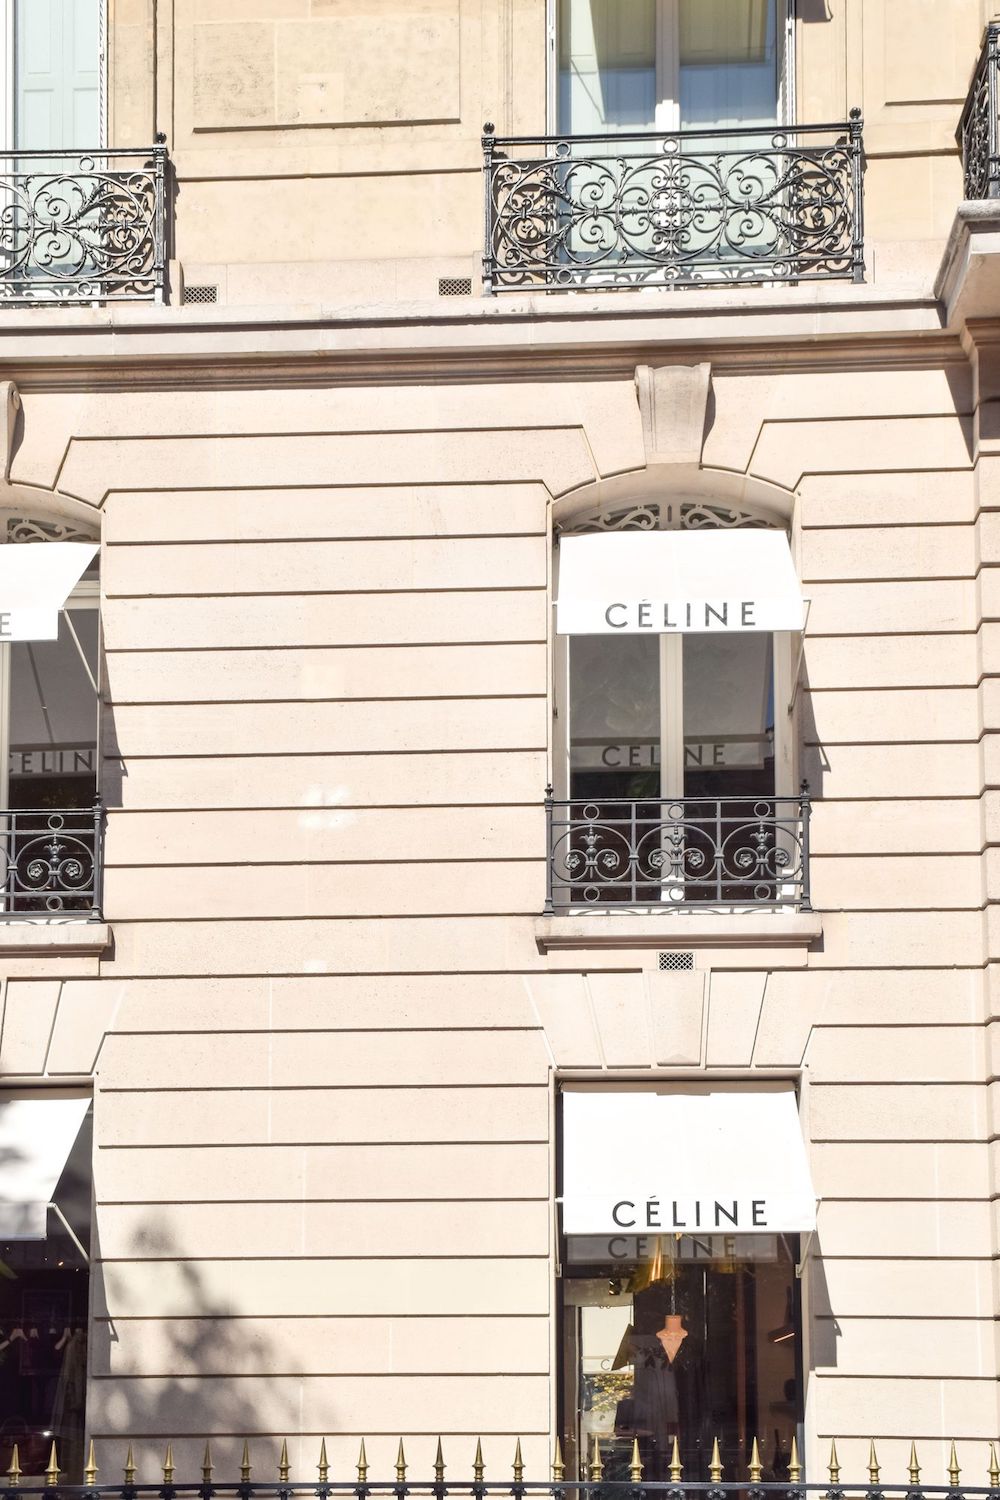 Celine Store On Avenue Montaigne, Paris